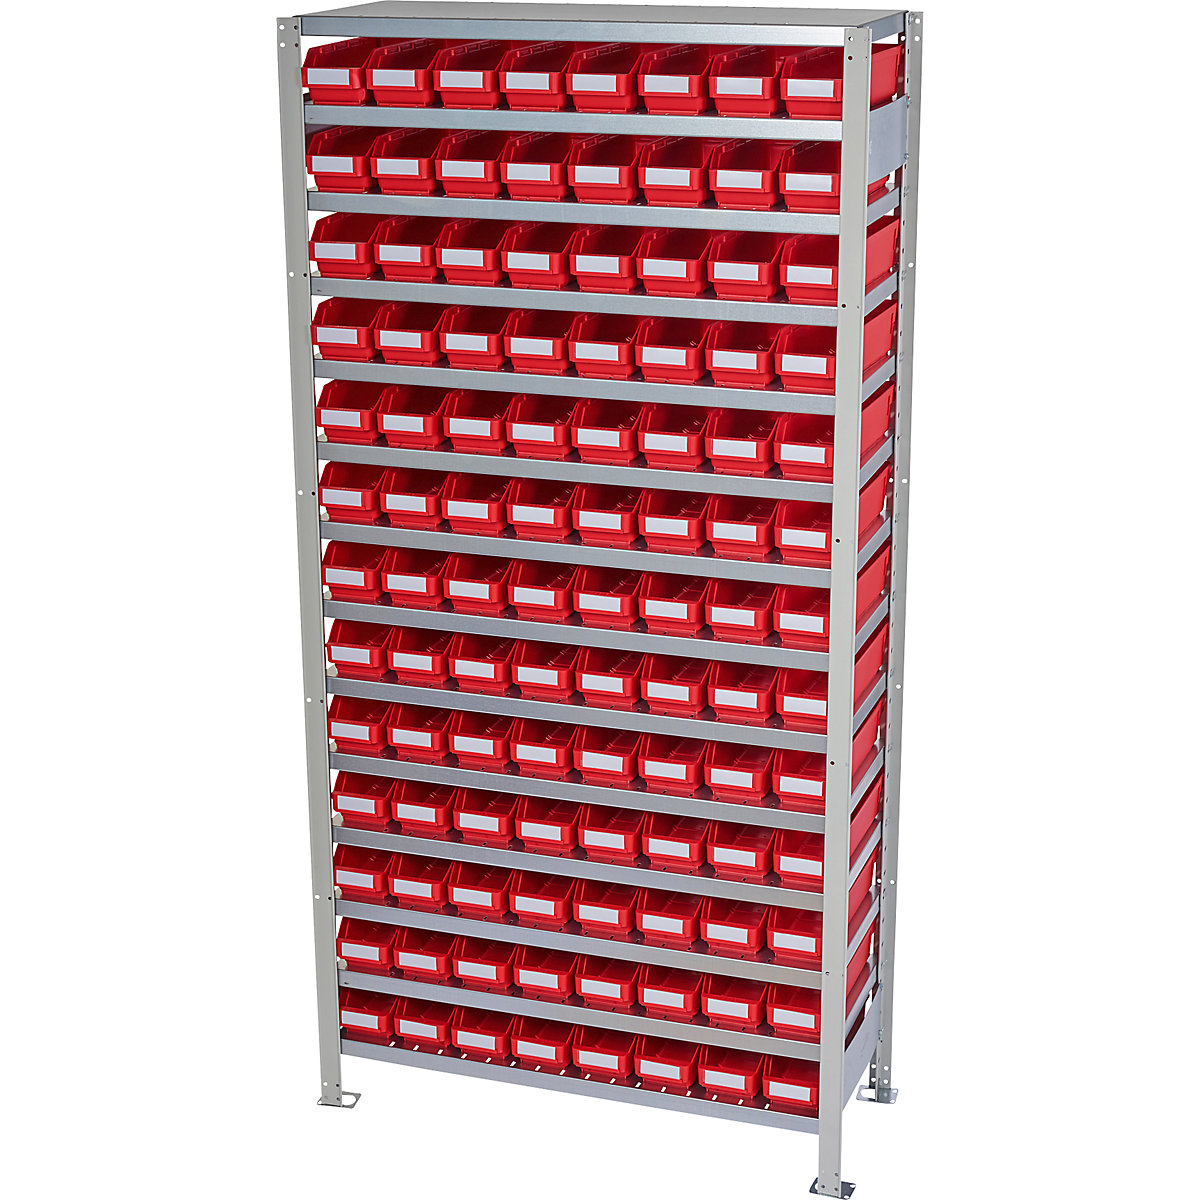 Összedugaszolós állvány dobozokkal – STEMO, állványmagasság 2100 mm, alapállvány, 300 mm mély, 104 piros doboz-16